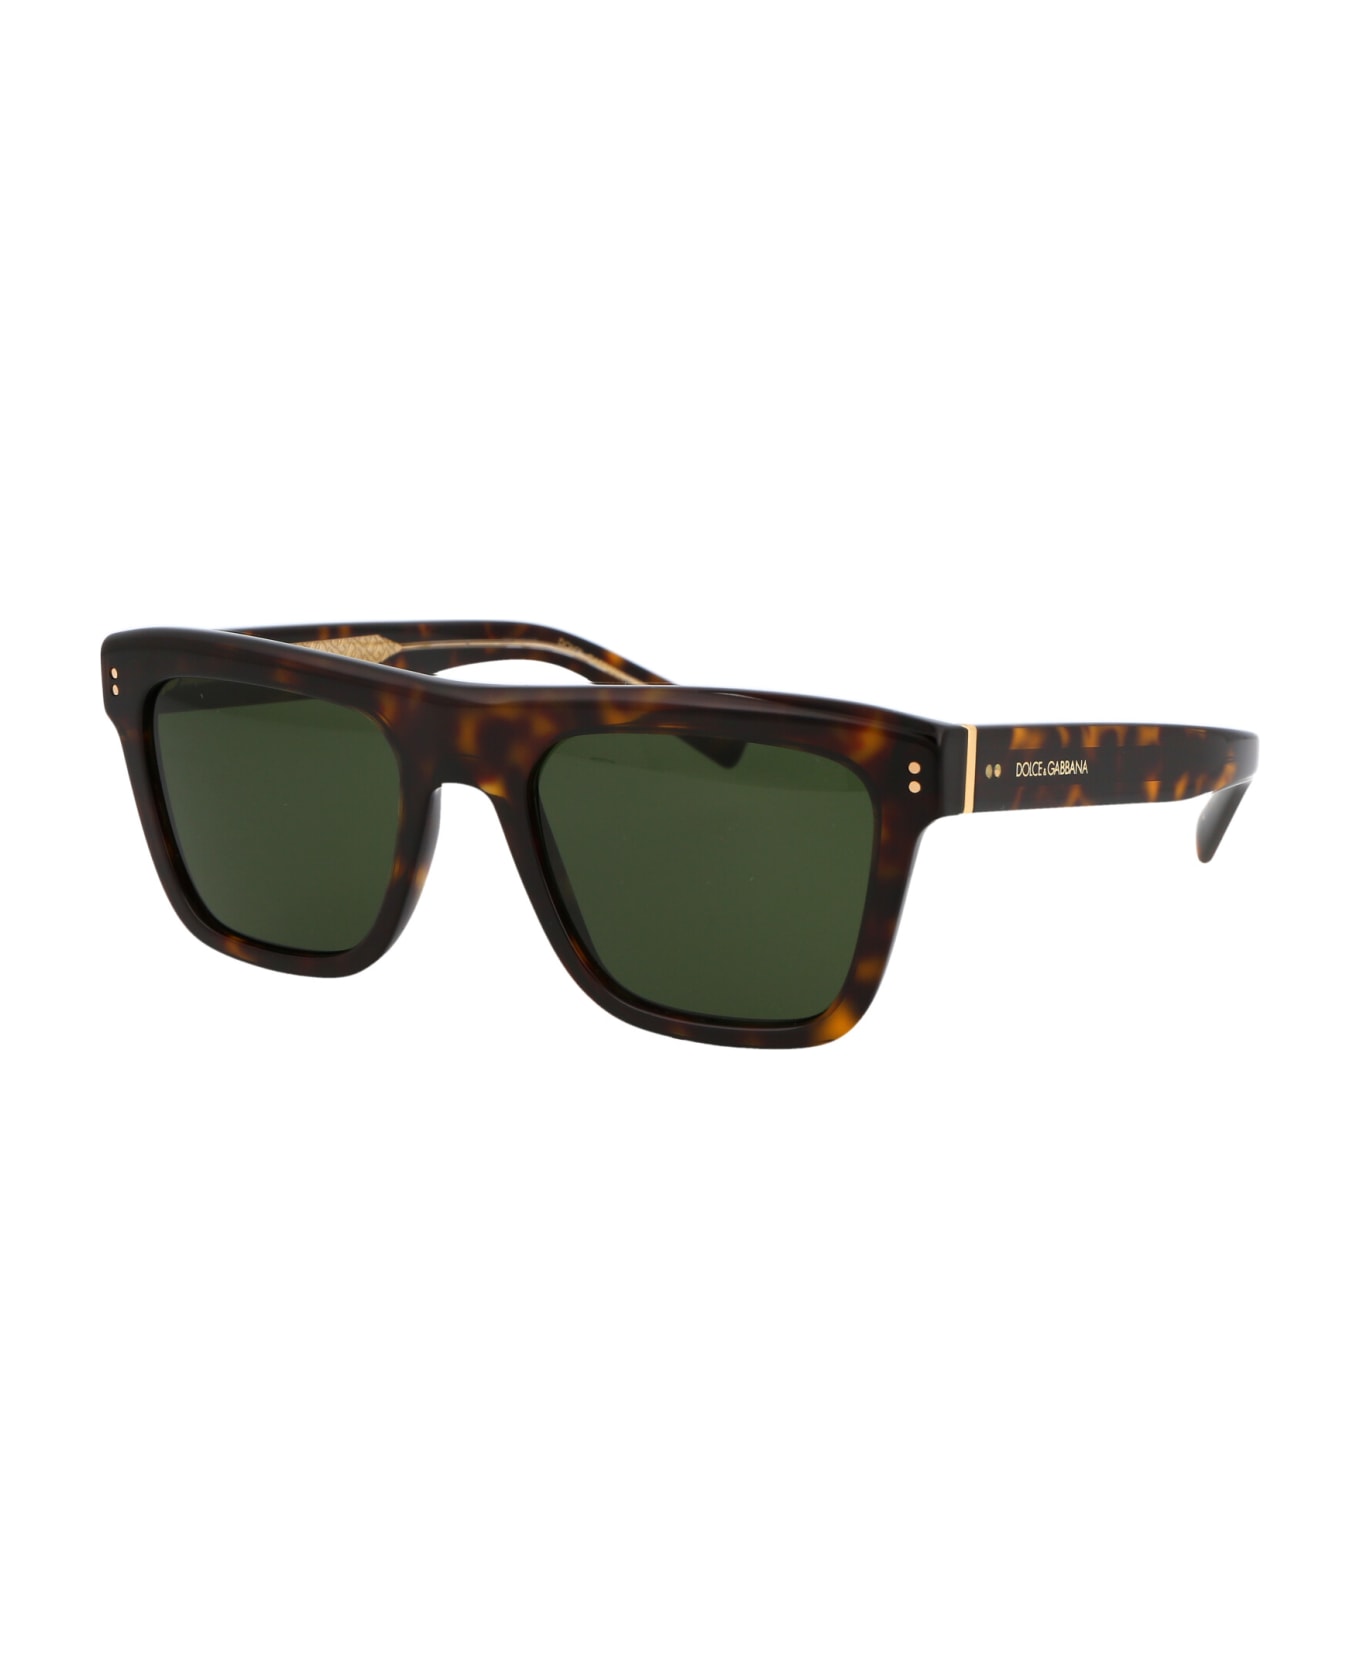 Dolce & Gabbana Eyewear 0dg4420 Sunglasses - 502/71 Havana